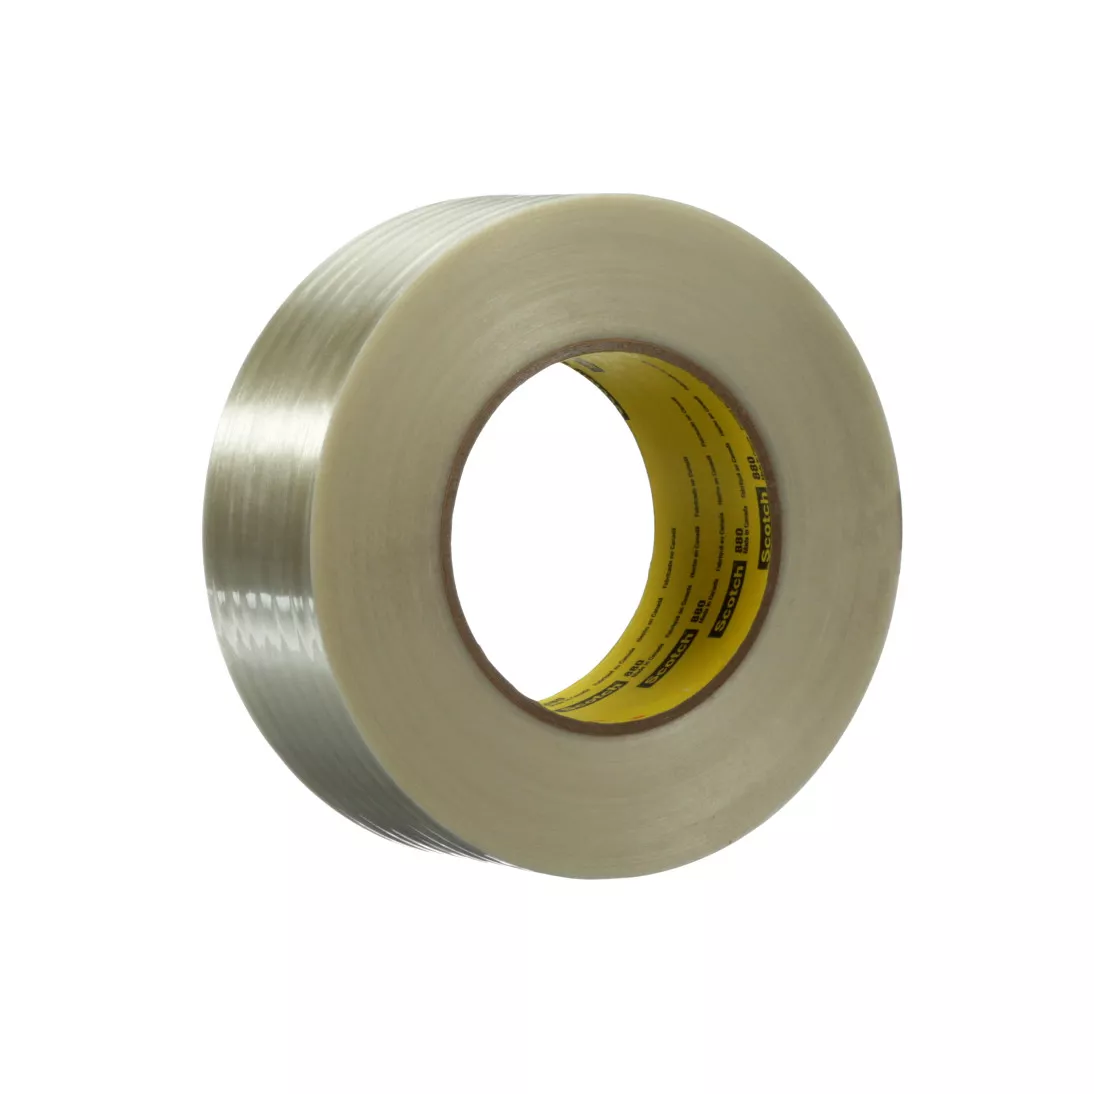 Scotch® Filament Tape 880, Clear, 1219 mm x 55 m, 7.7 mil, 1 roll per
case